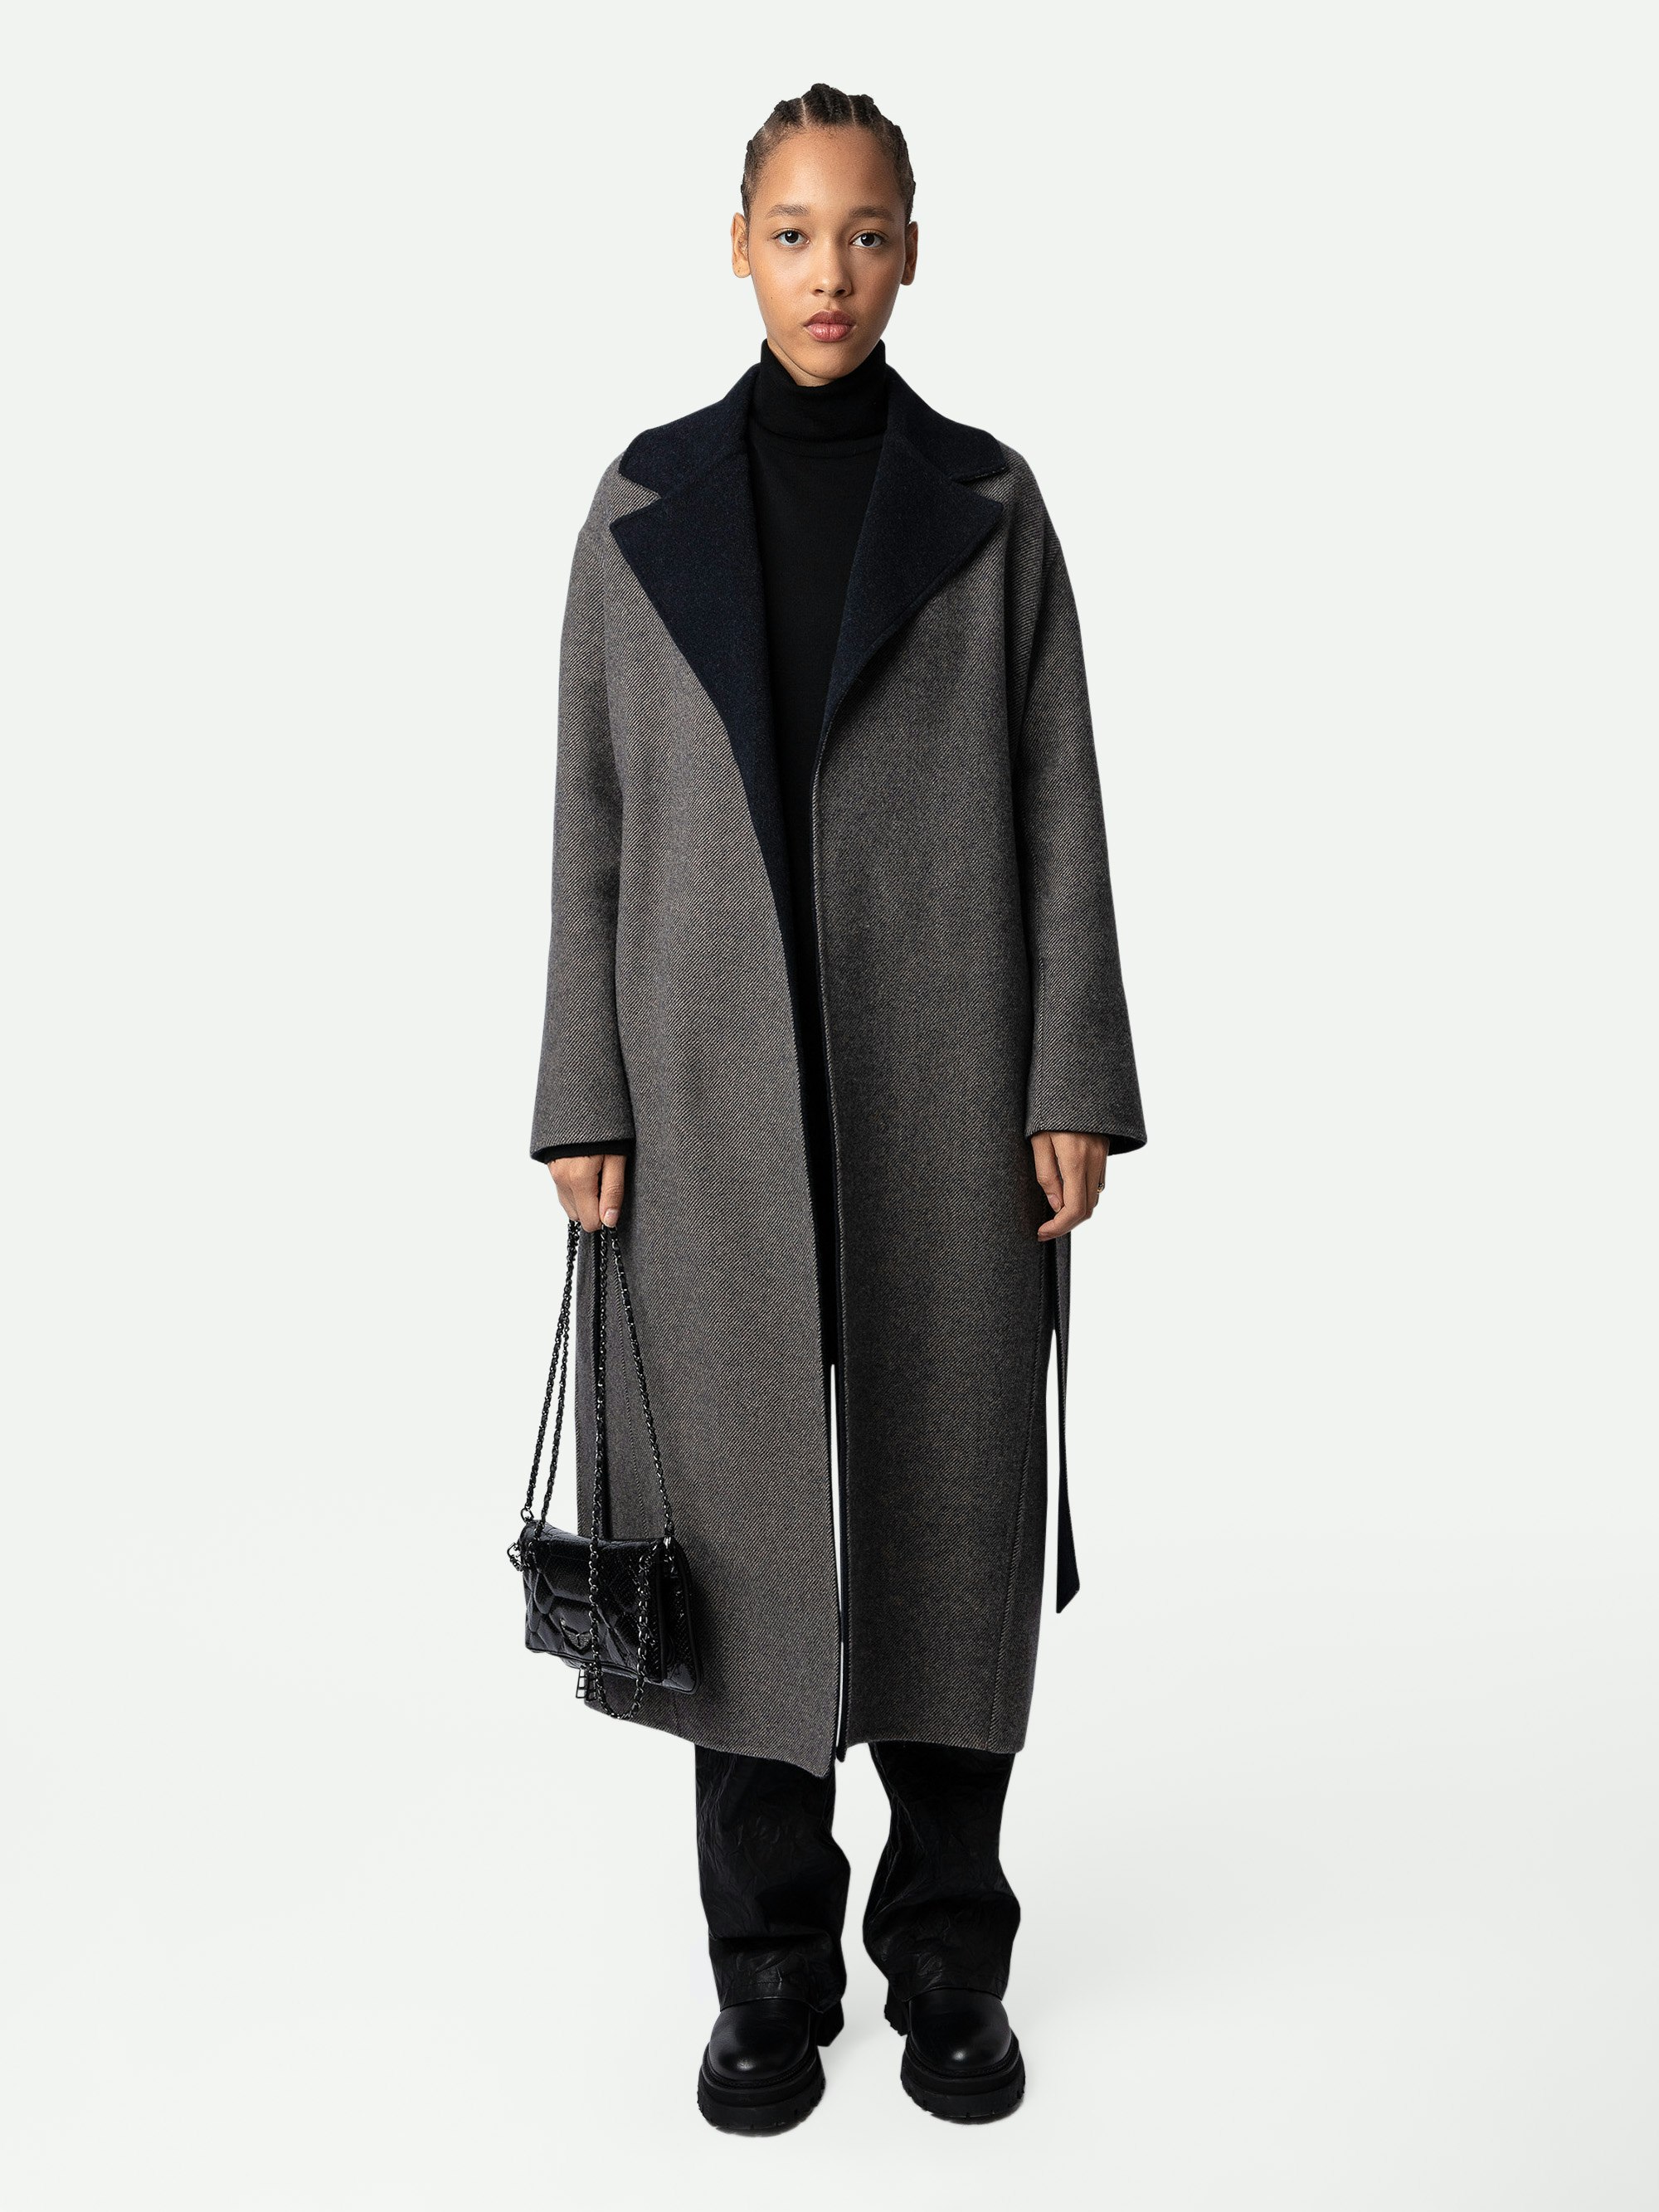 Cappotto Meli - Cappotto da donna in lana nera con cintura, collo a contrasto e motivo ad alti sul retro.